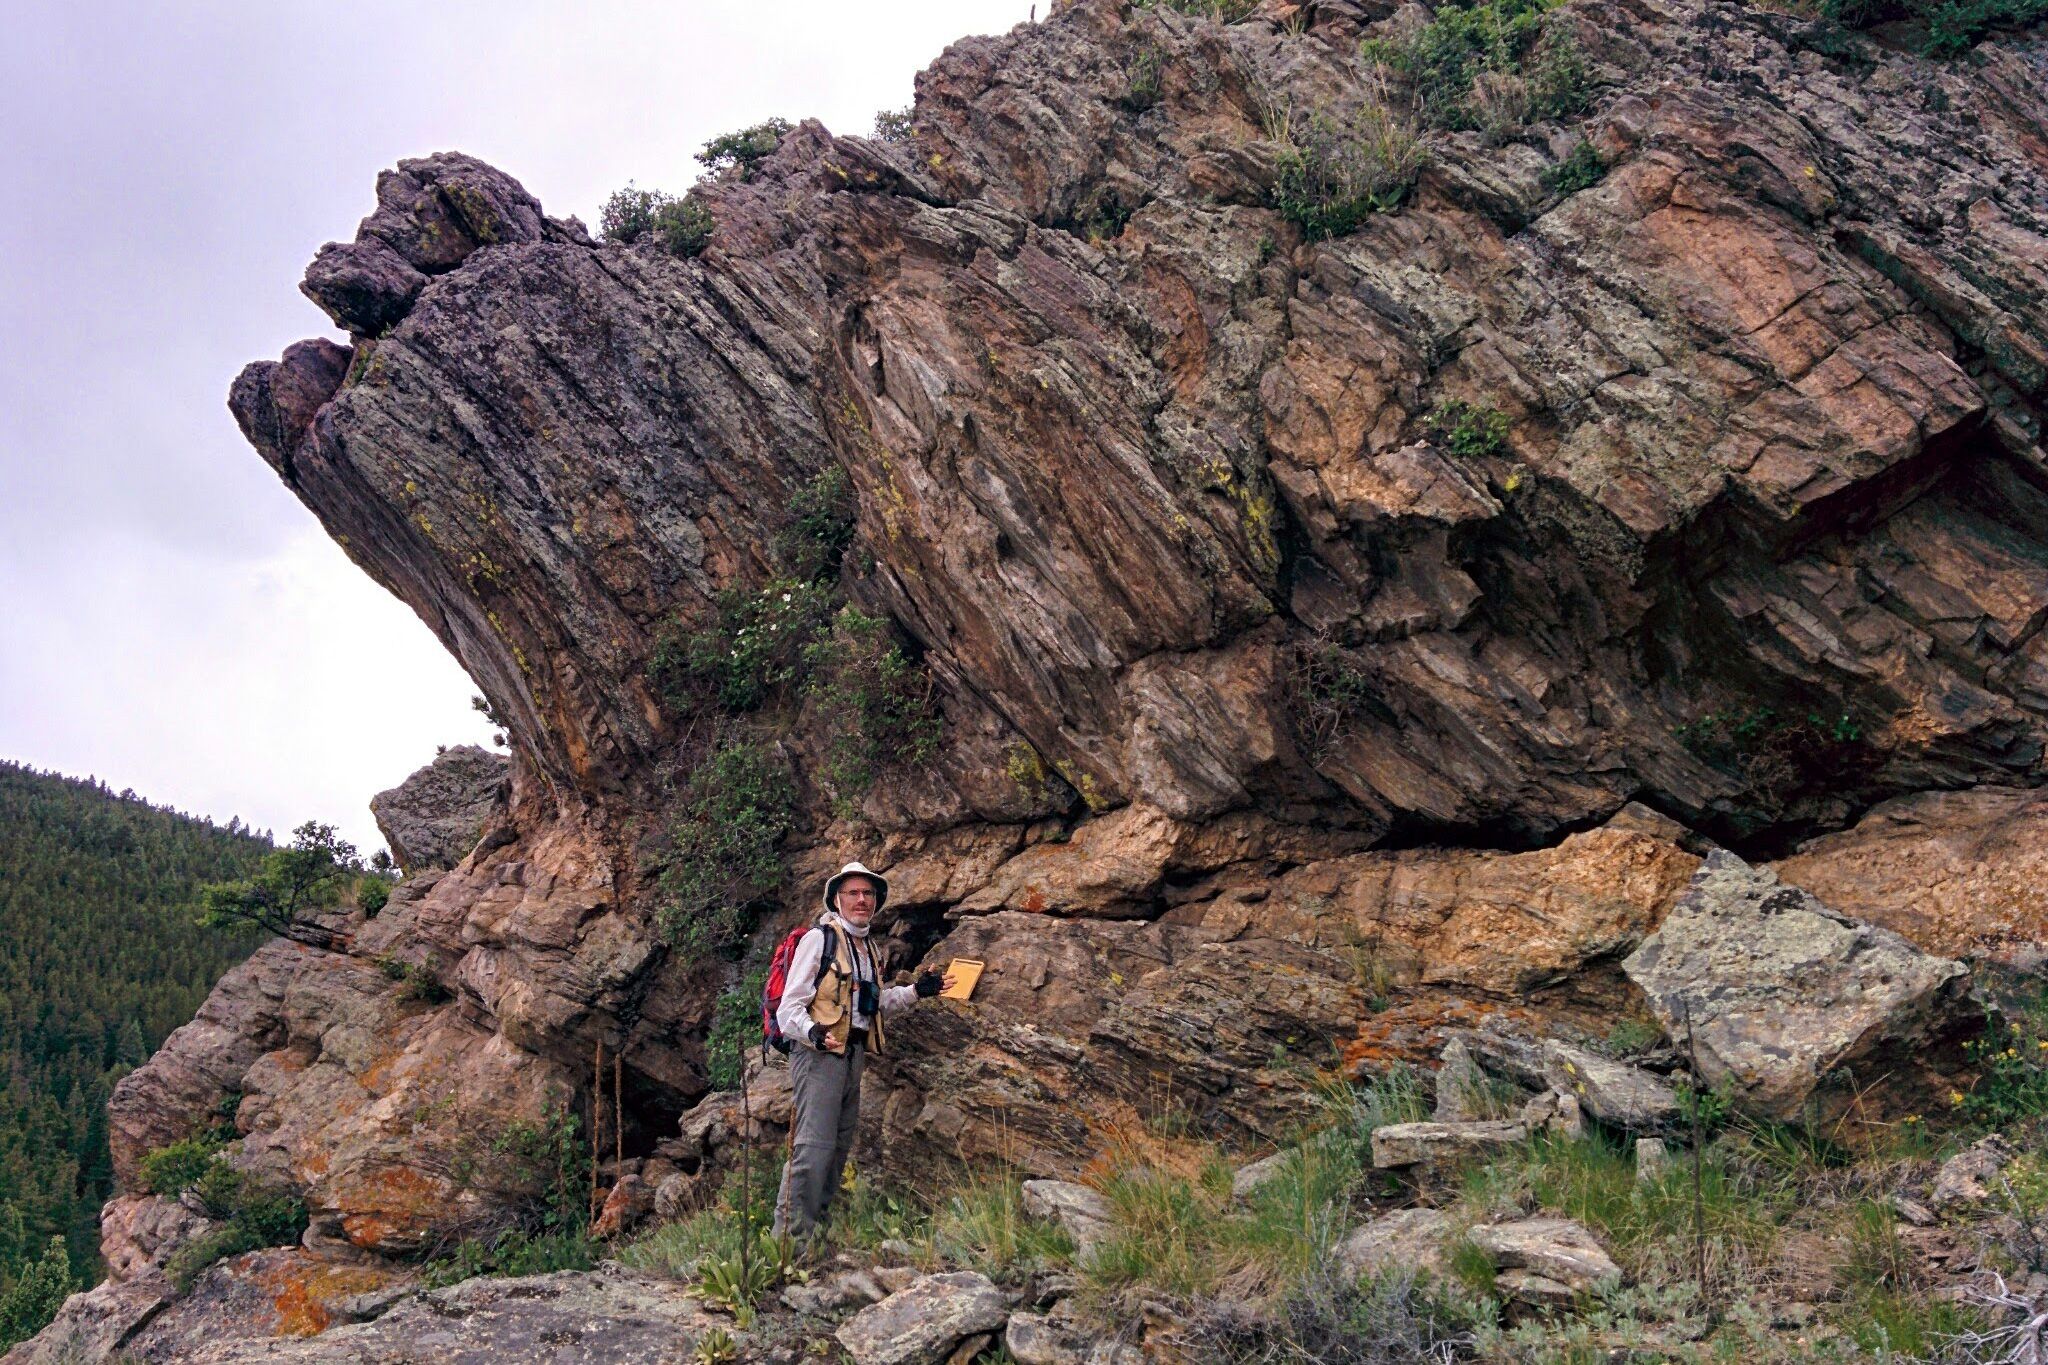 bedrock rock